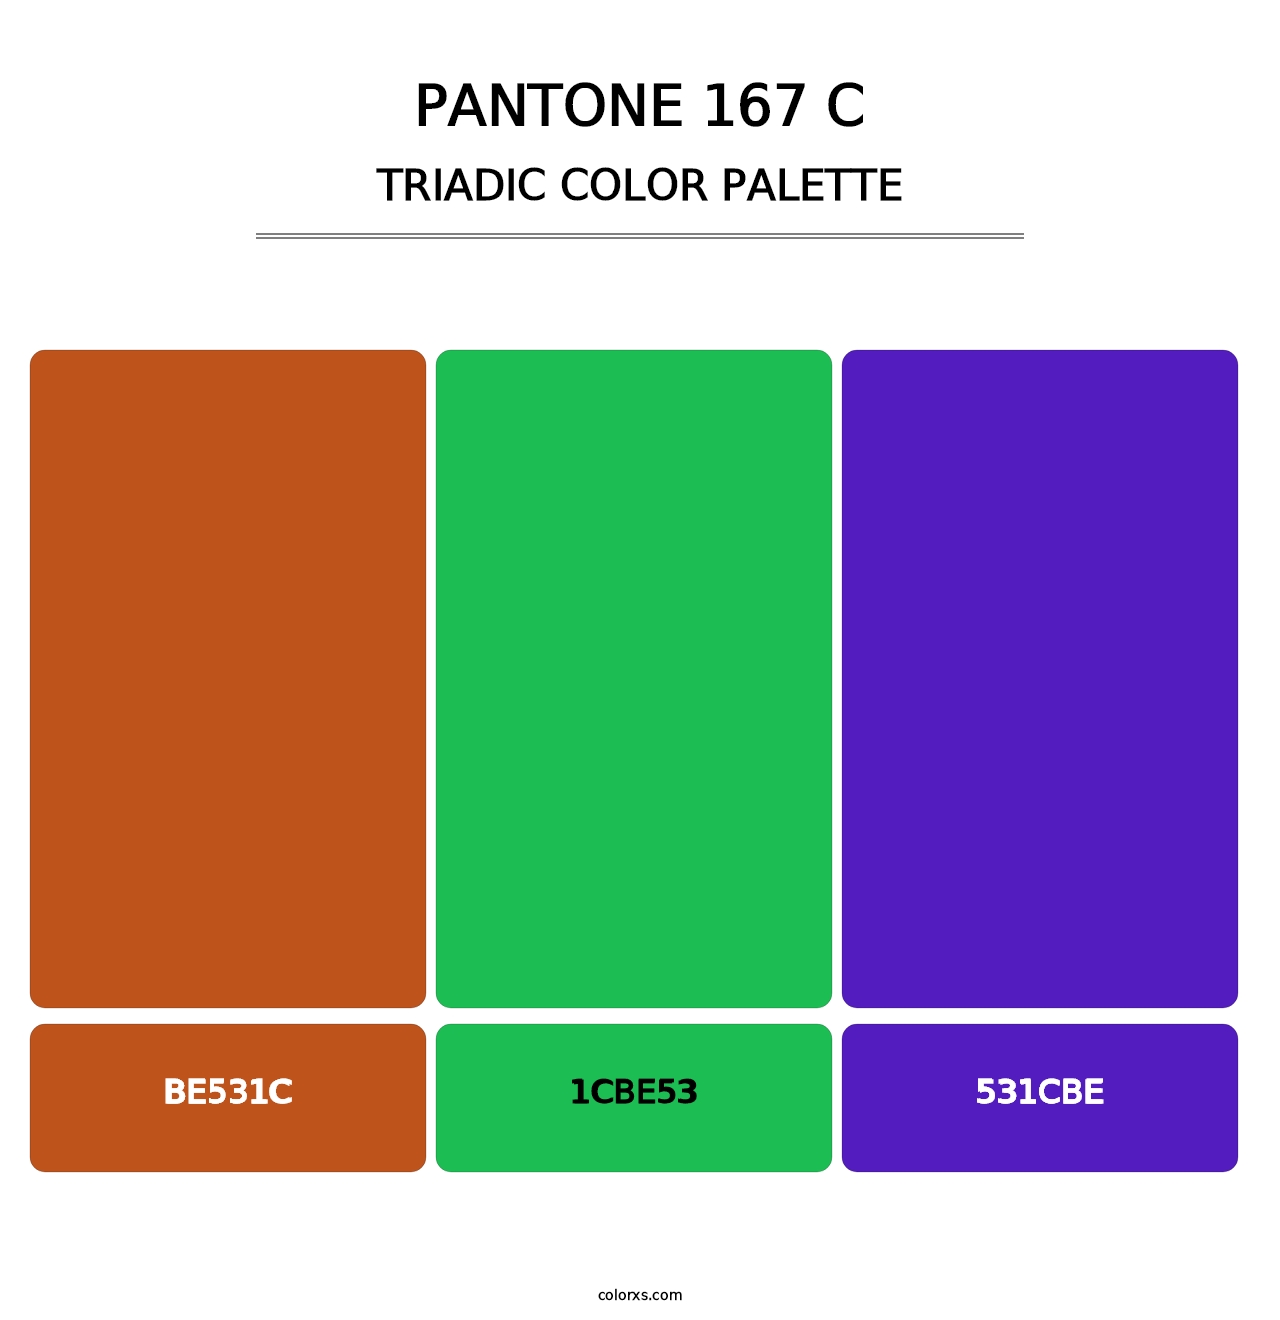 PANTONE 167 C - Triadic Color Palette